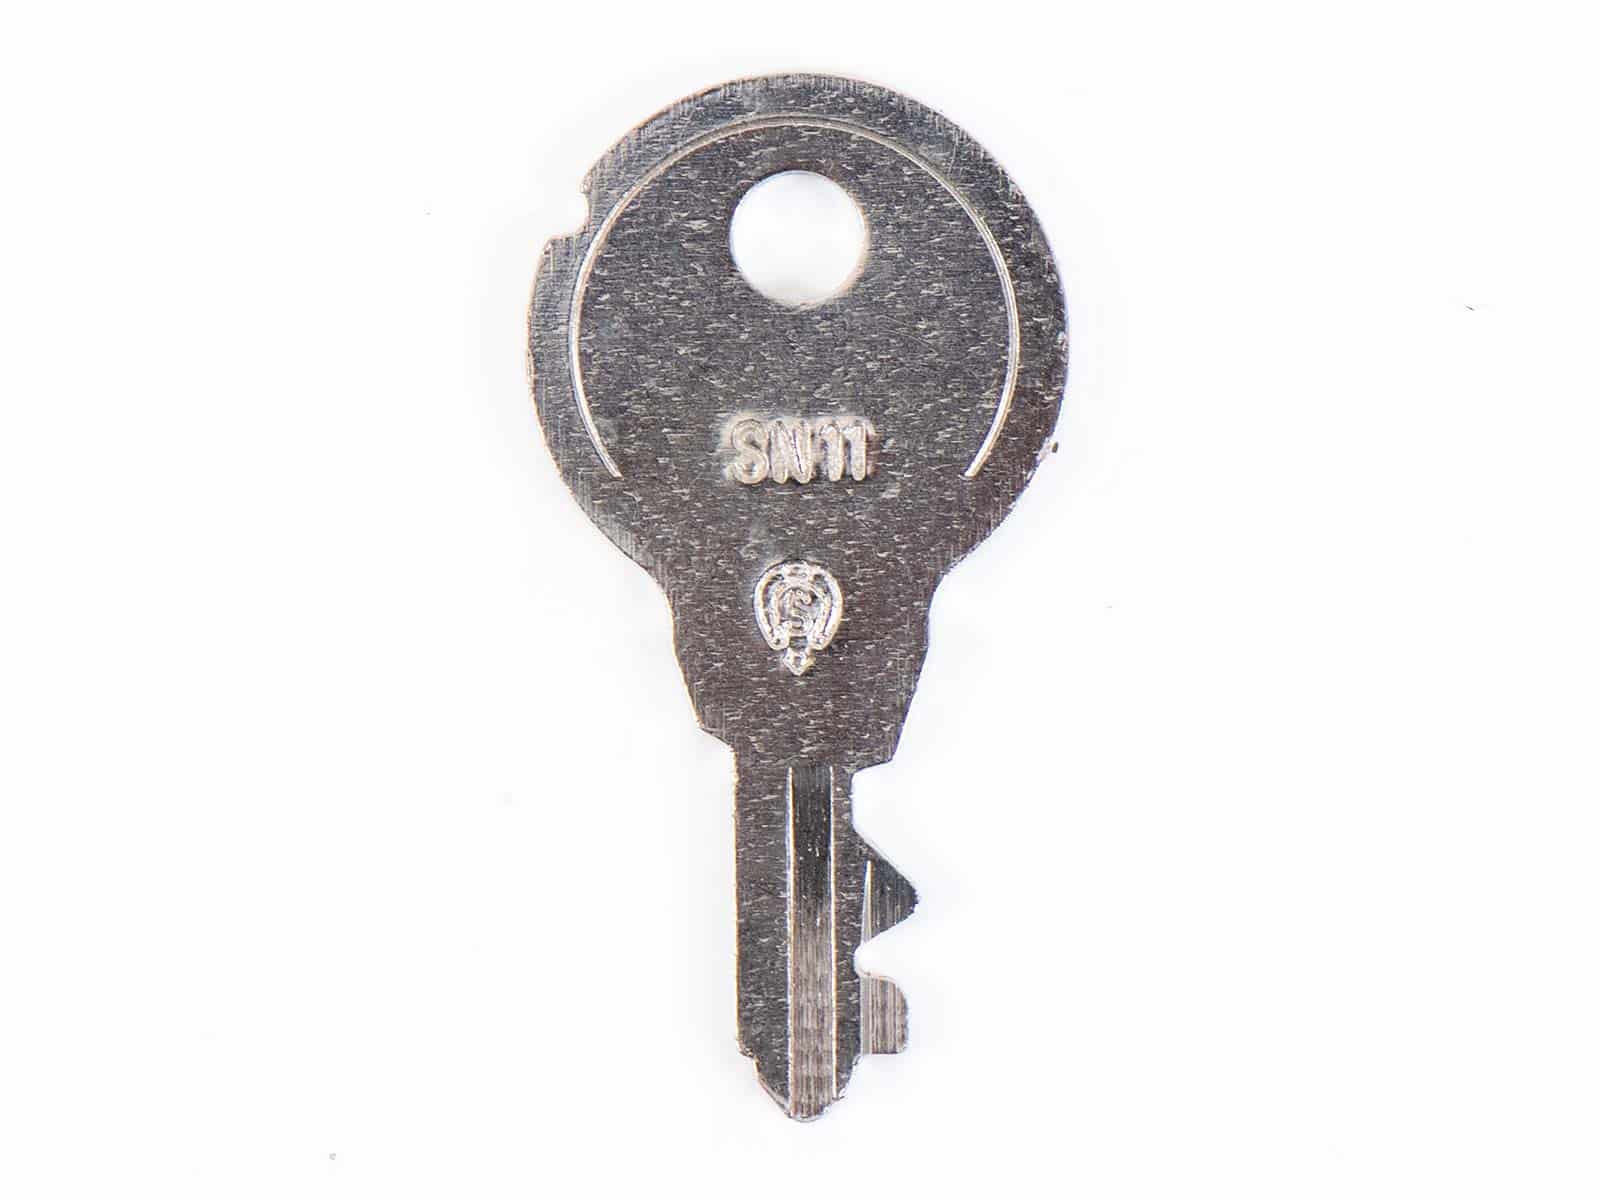 Schlüssel für verschiedene Hepco&Becker Koffer&Taschen (1 Stück)